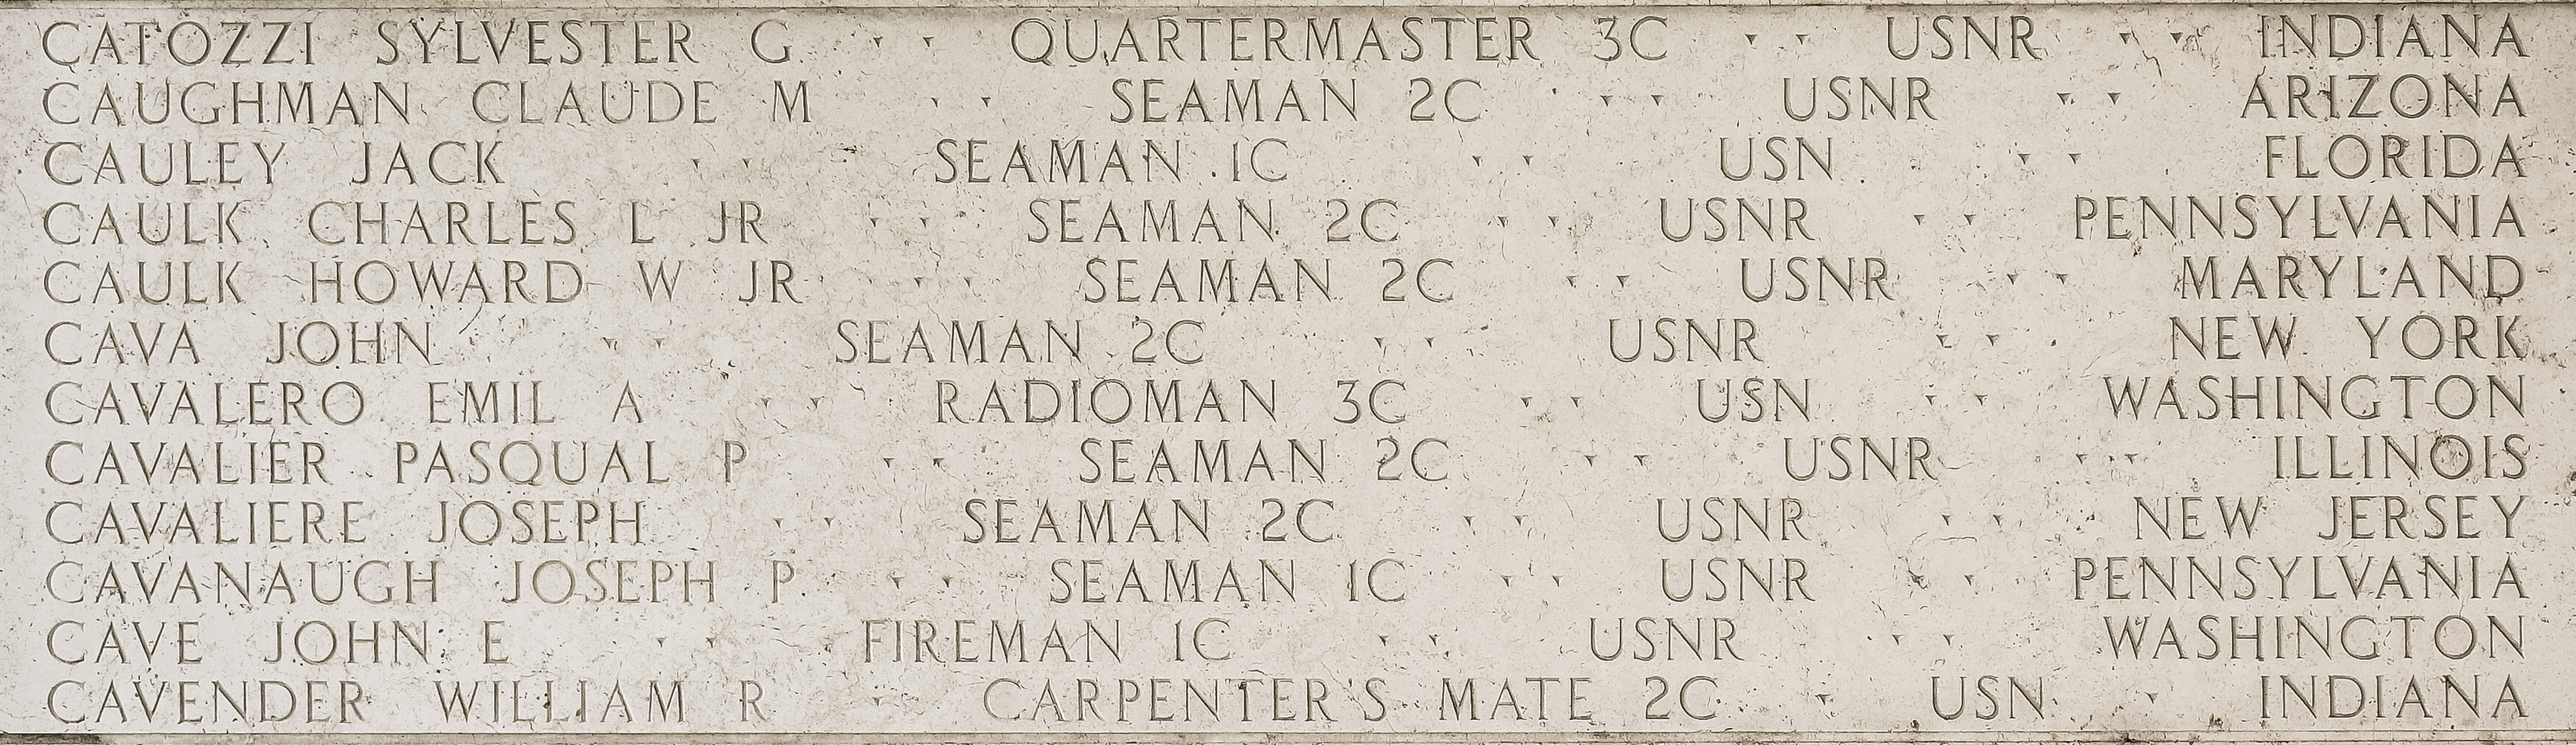 Howard W. Caulk, Seaman Second Class